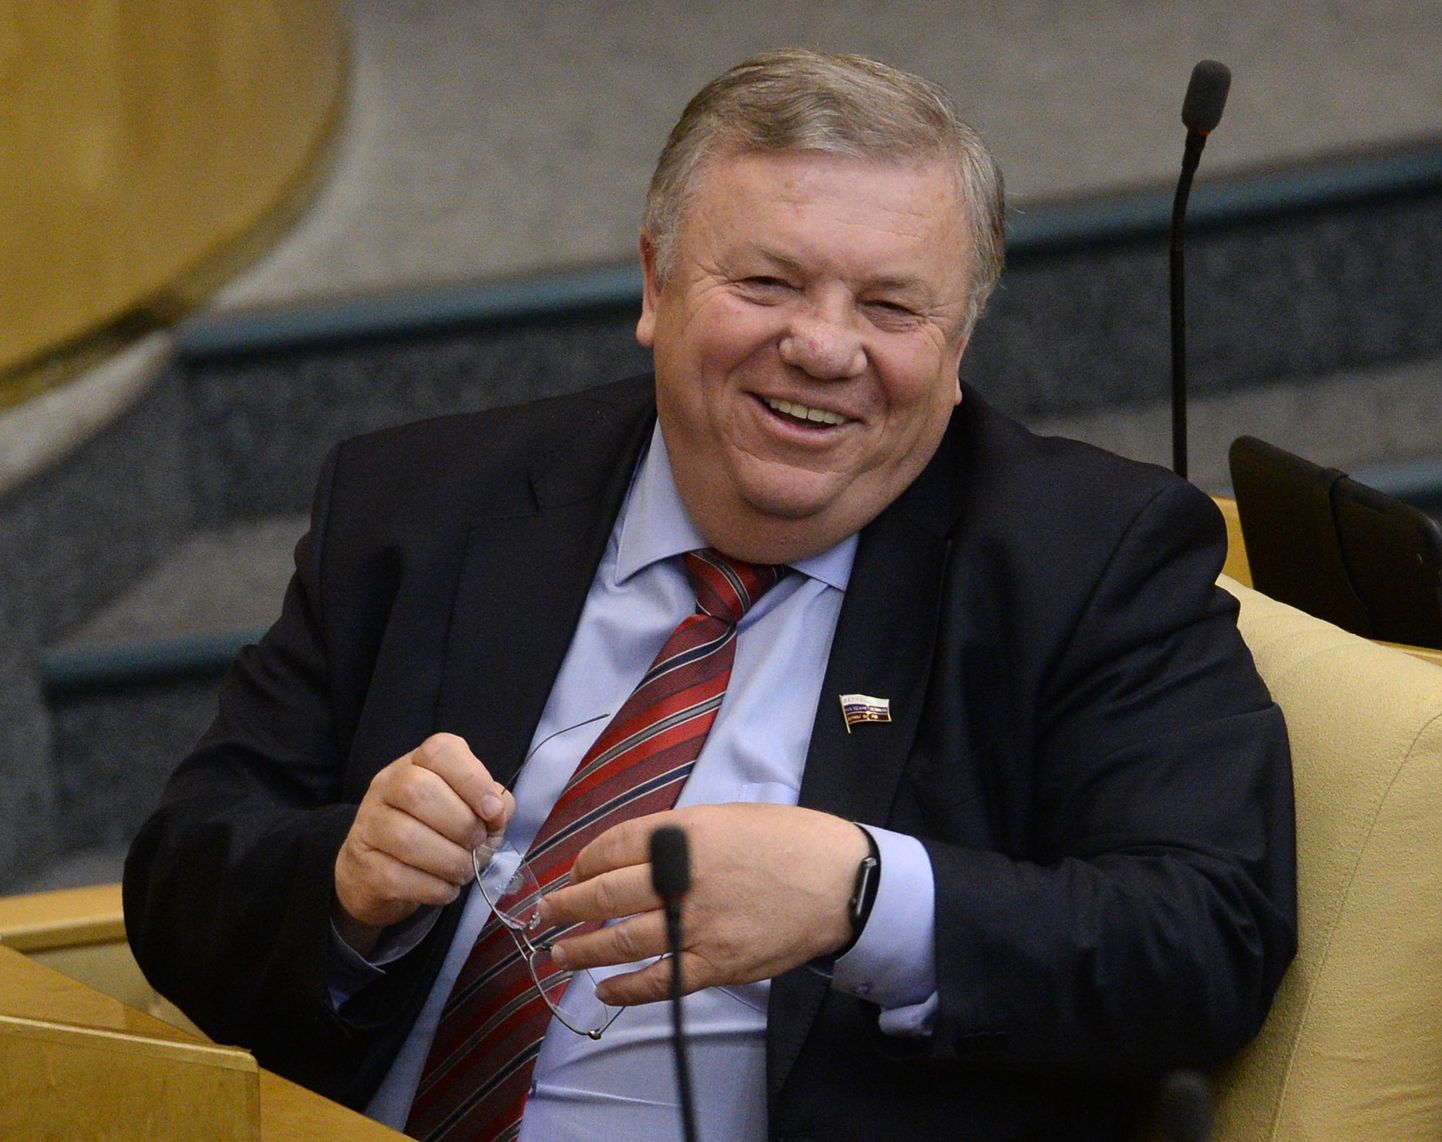 Vene riigiduuma kaitsekomitee esimehe Vladimir Komojedov